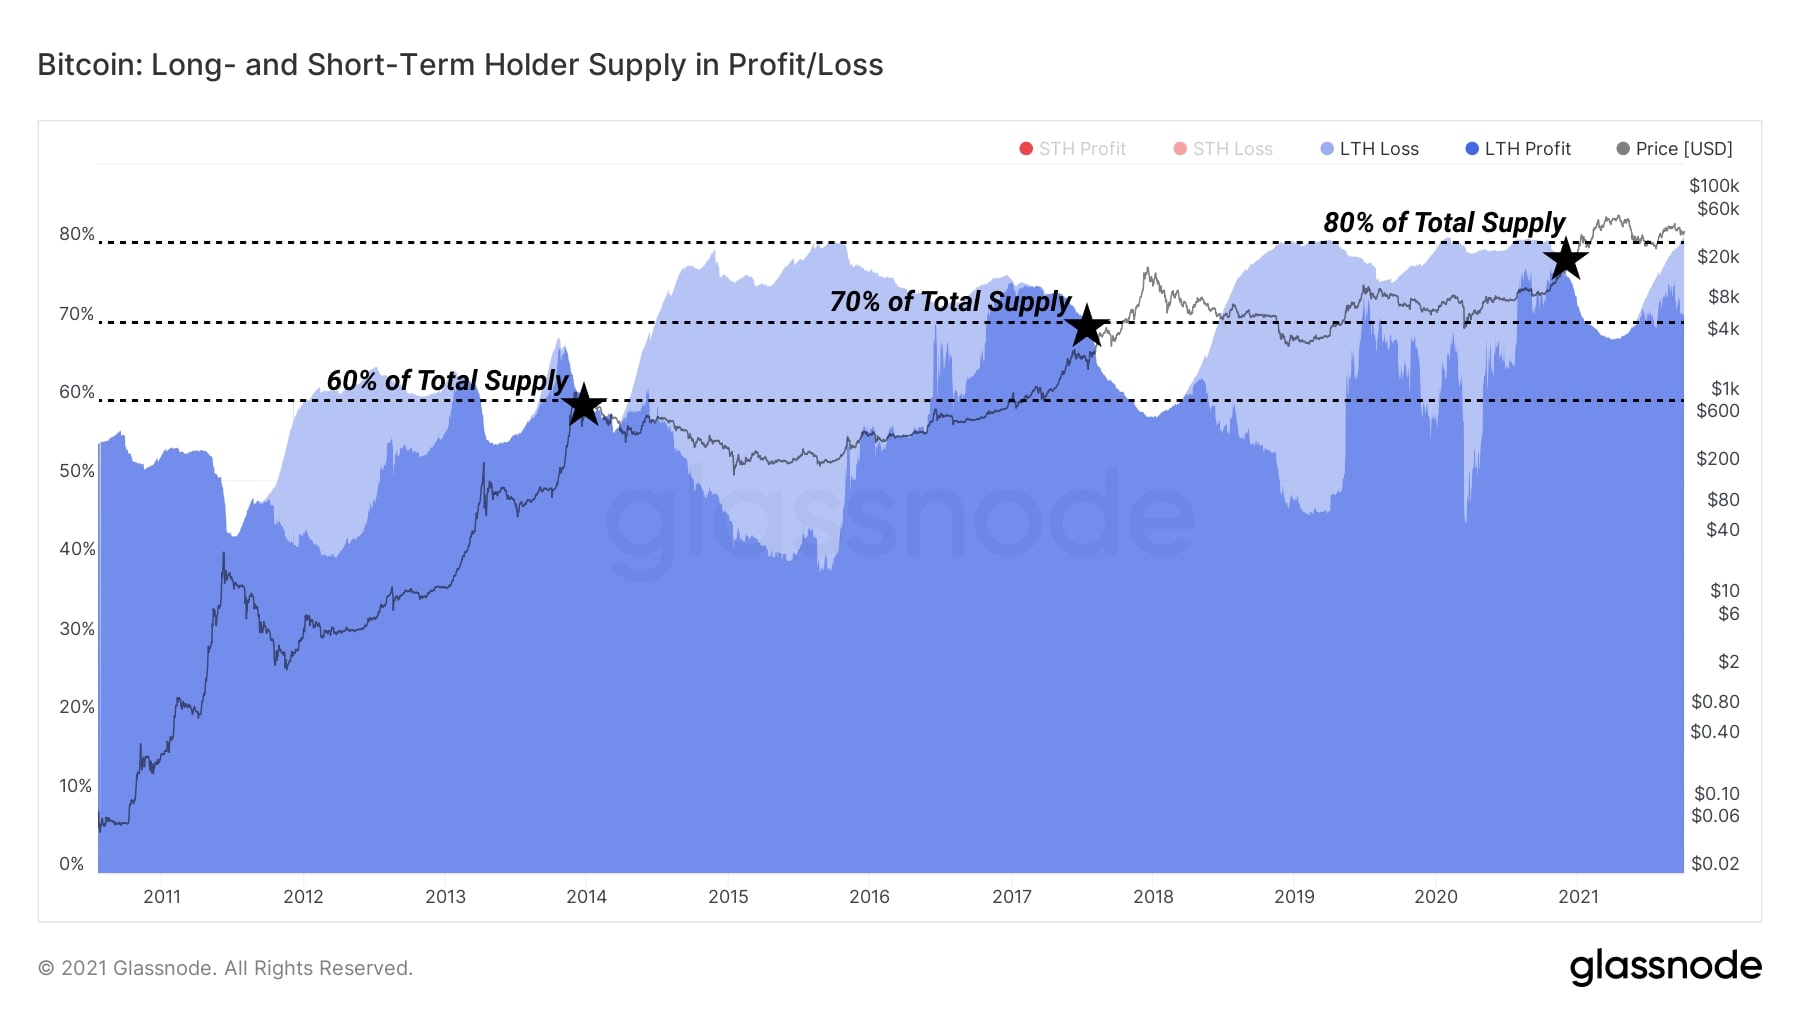 Biểu đồ Bitcoin: Lợi nhuận/ phần lỗ trên các nguồn cung từ Holder ngắn hạn và Holder dài hạn (Nguồn: Glassnode)